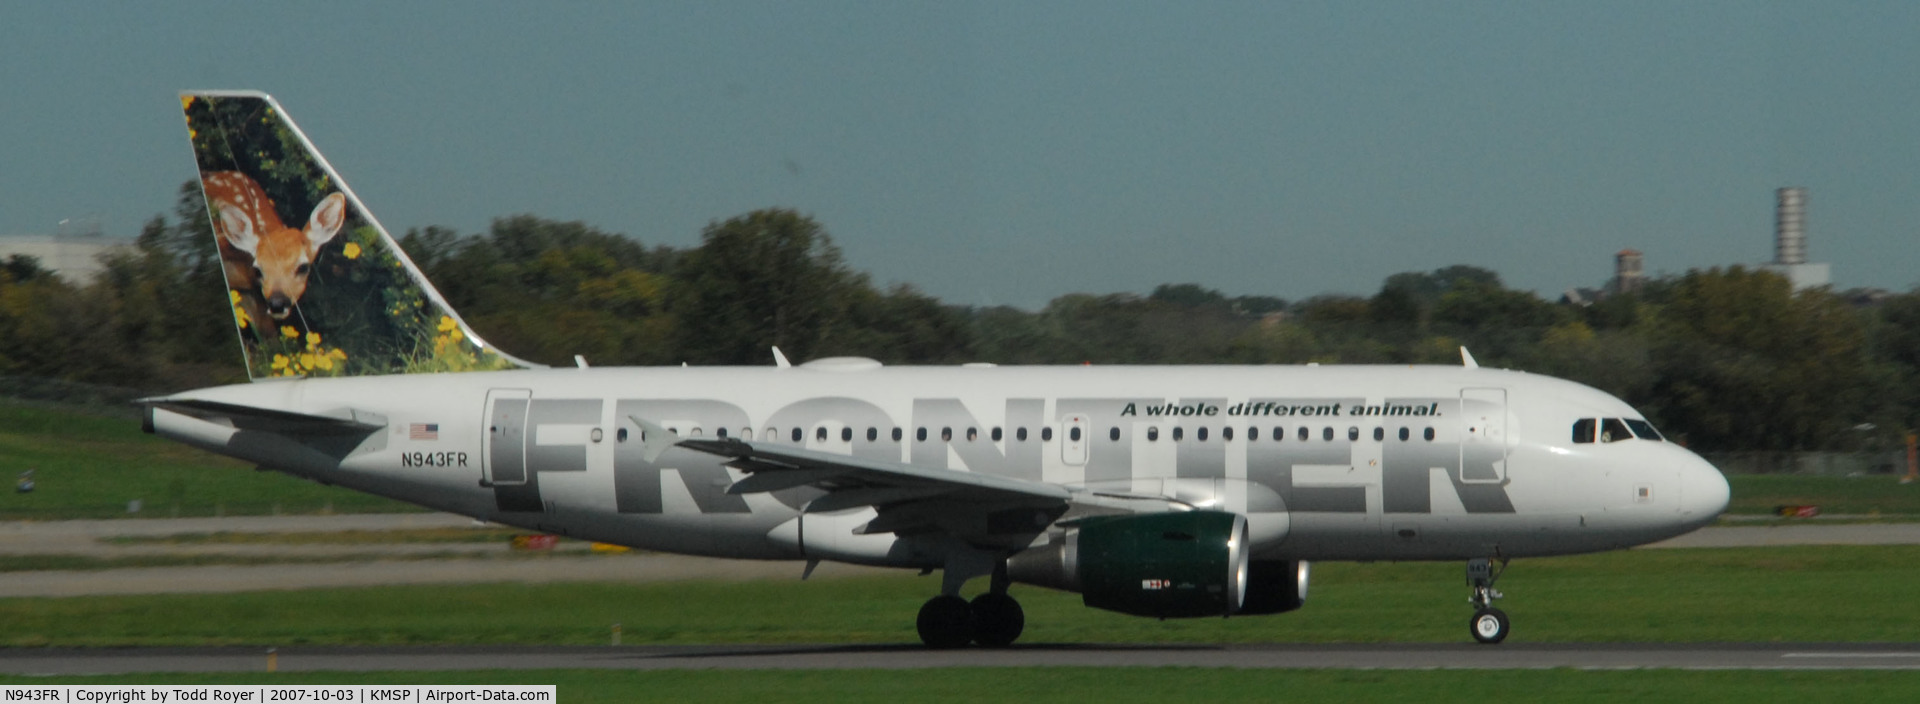 N943FR, 2005 Airbus A319-112 C/N 2518, Departing MSP on 12L